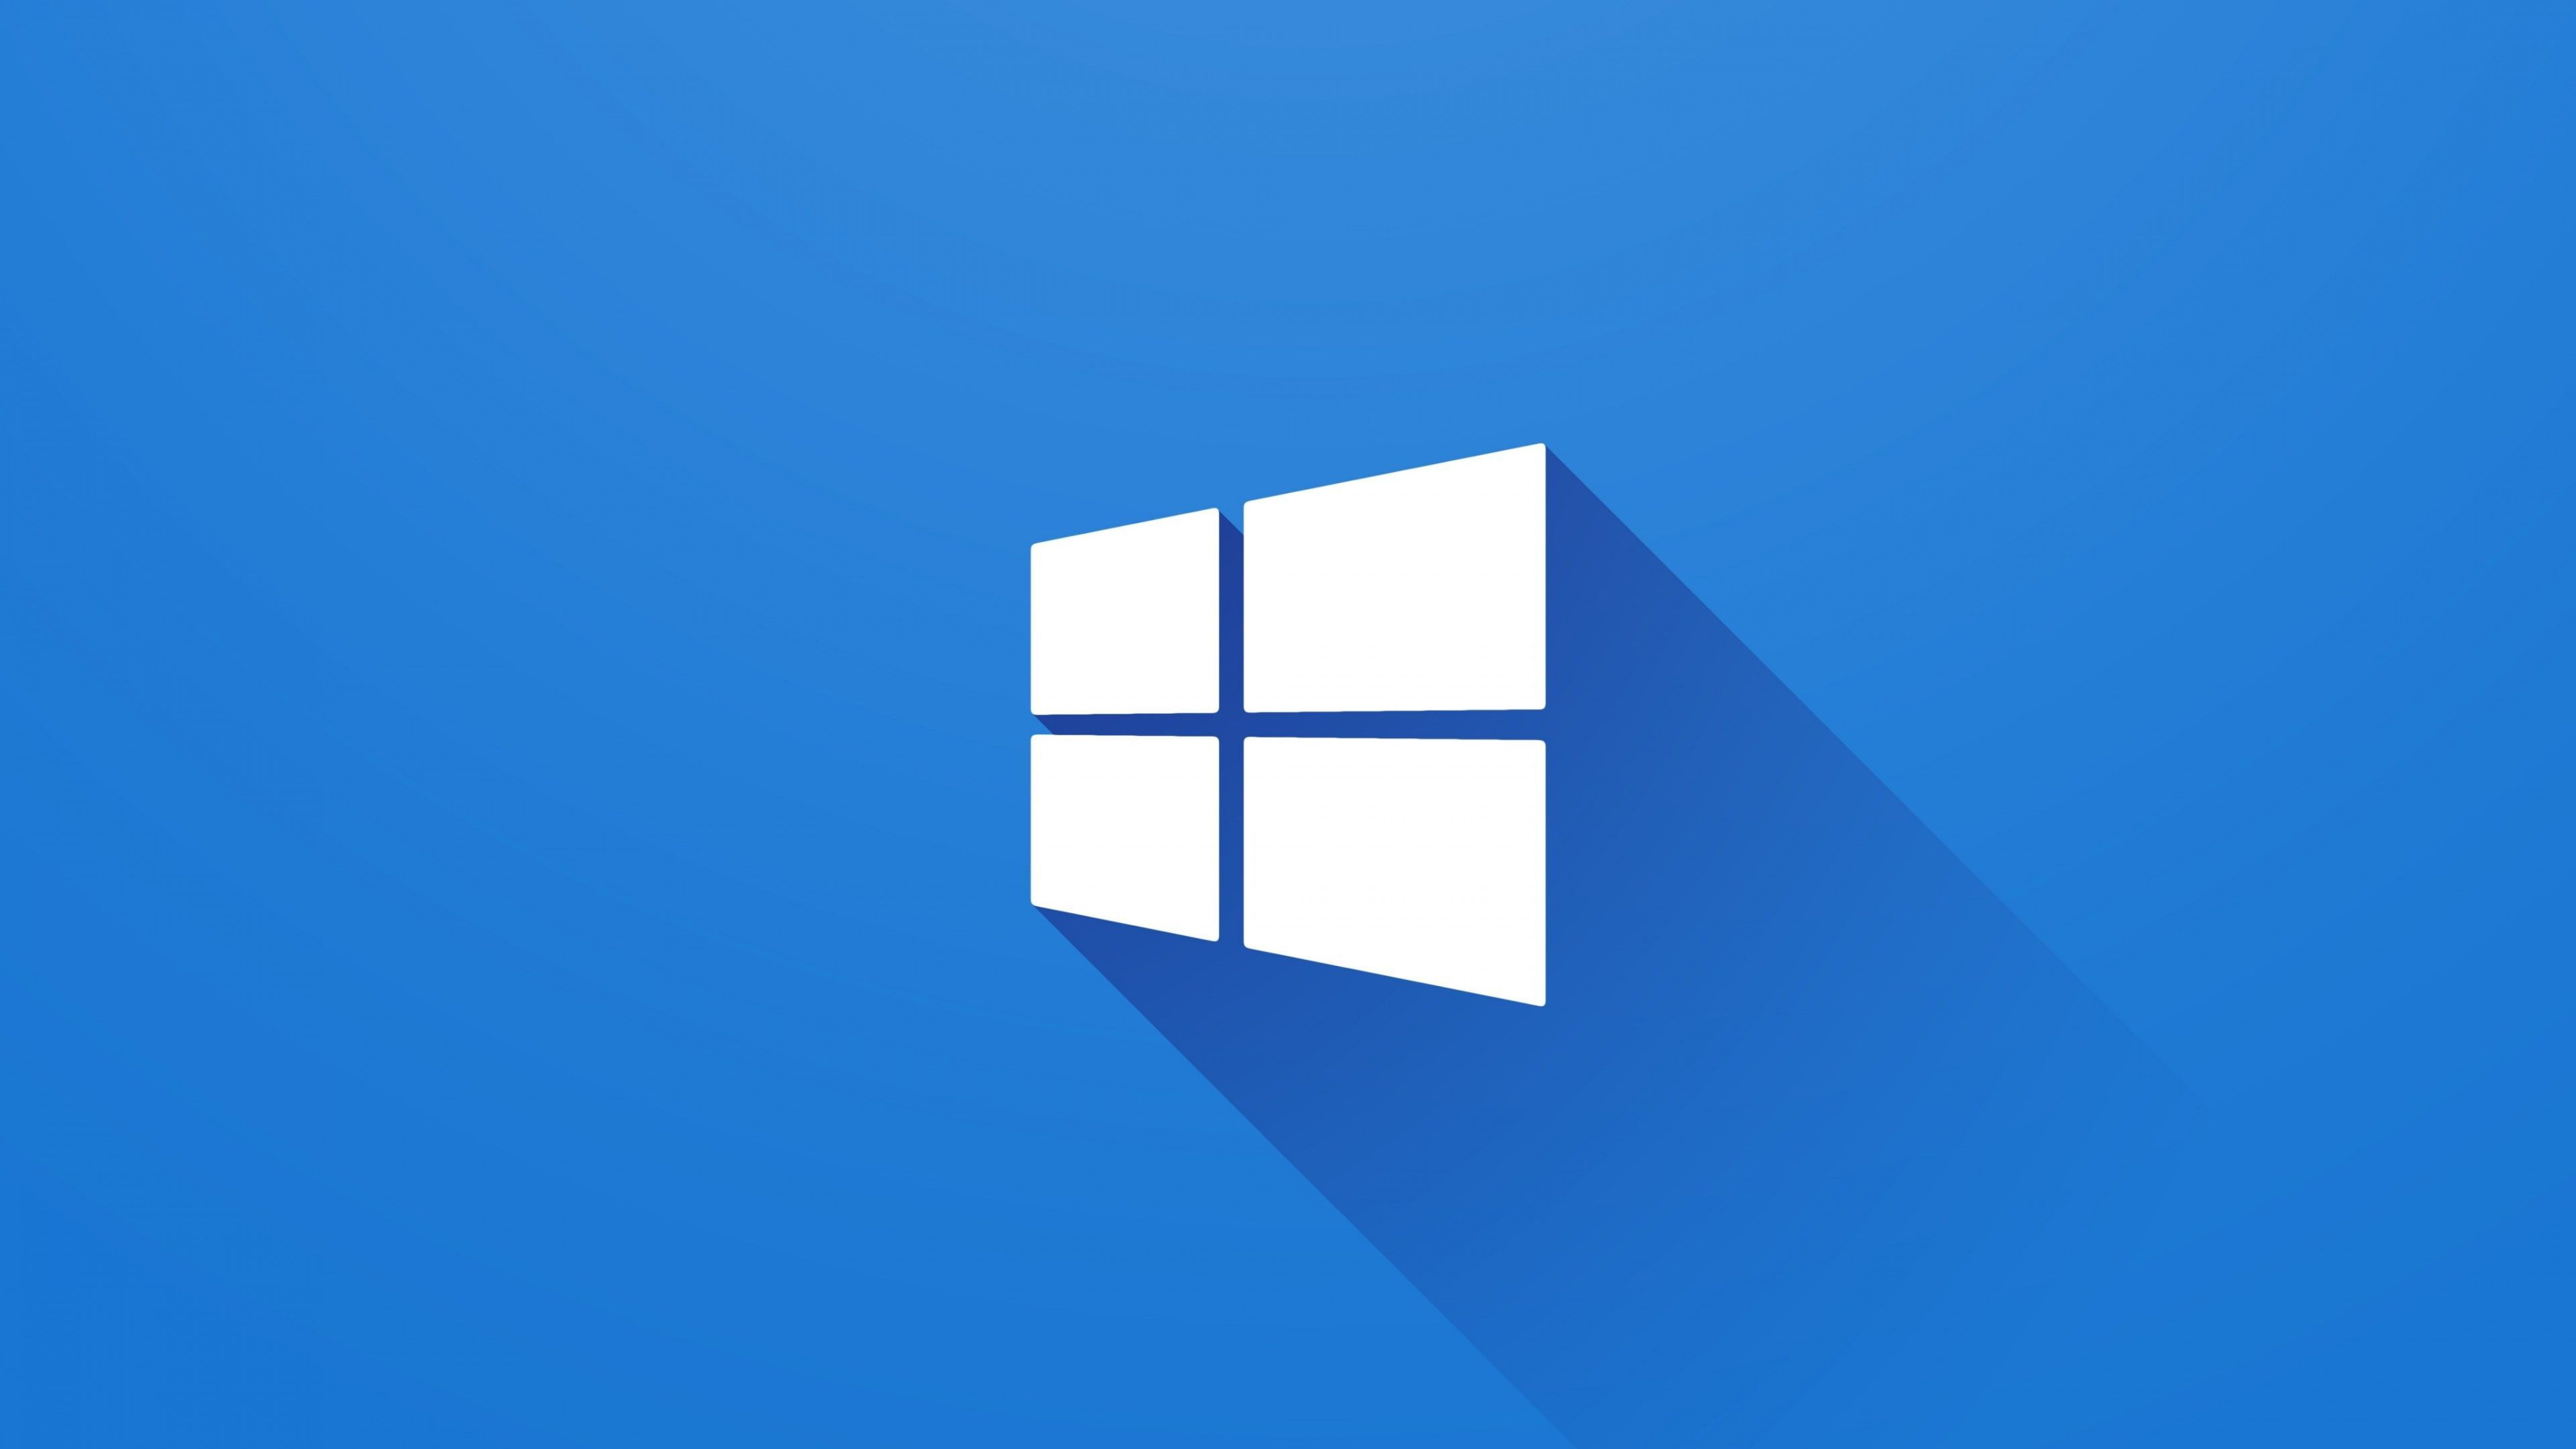 Logo Windows chính là biểu tượng của hệ điều hành phổ biến nhất thế giới. Nếu bạn là một người yêu thích công nghệ và muốn tạo cho máy tính của mình phong cách riêng, logo Windows chắc chắn sẽ là lựa chọn hoàn hảo. Hãy xem ngay để tải về những hình ảnh logo Windows đẹp nhất.